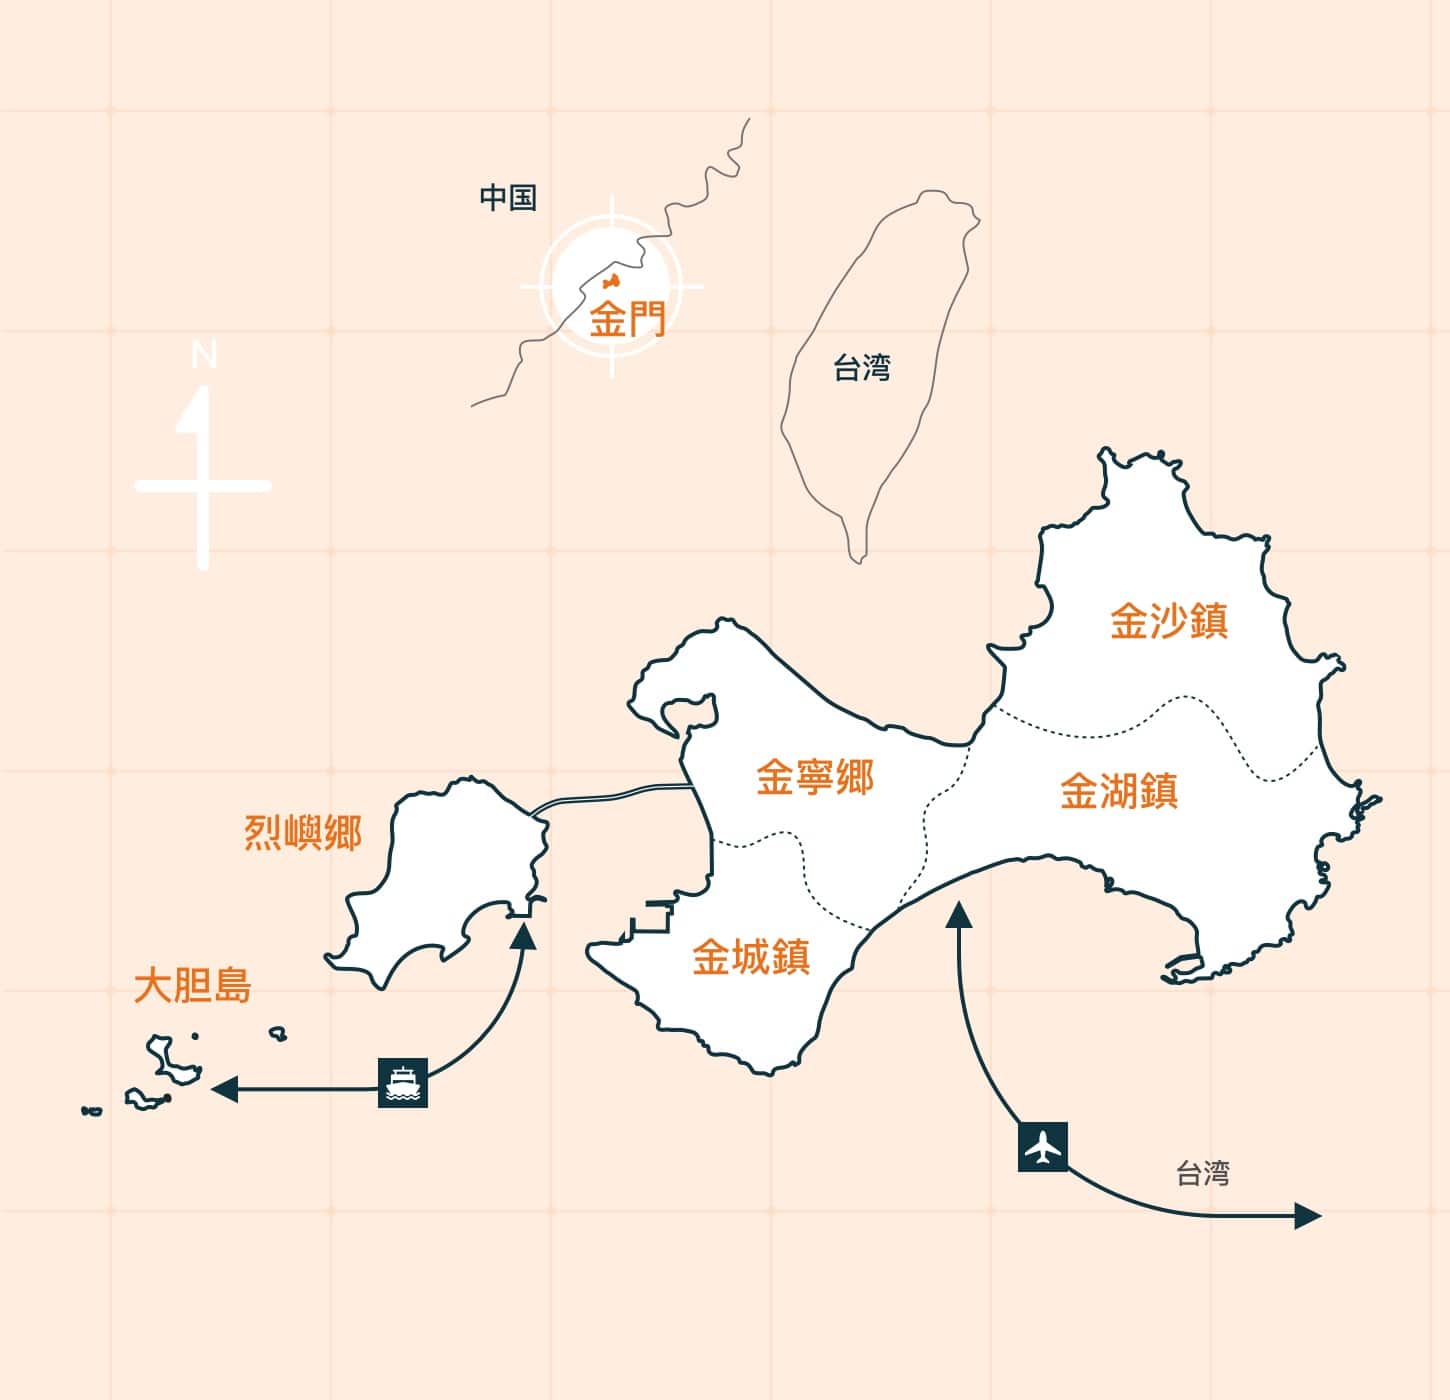 台湾本島と金門及び金門島間のアクセス